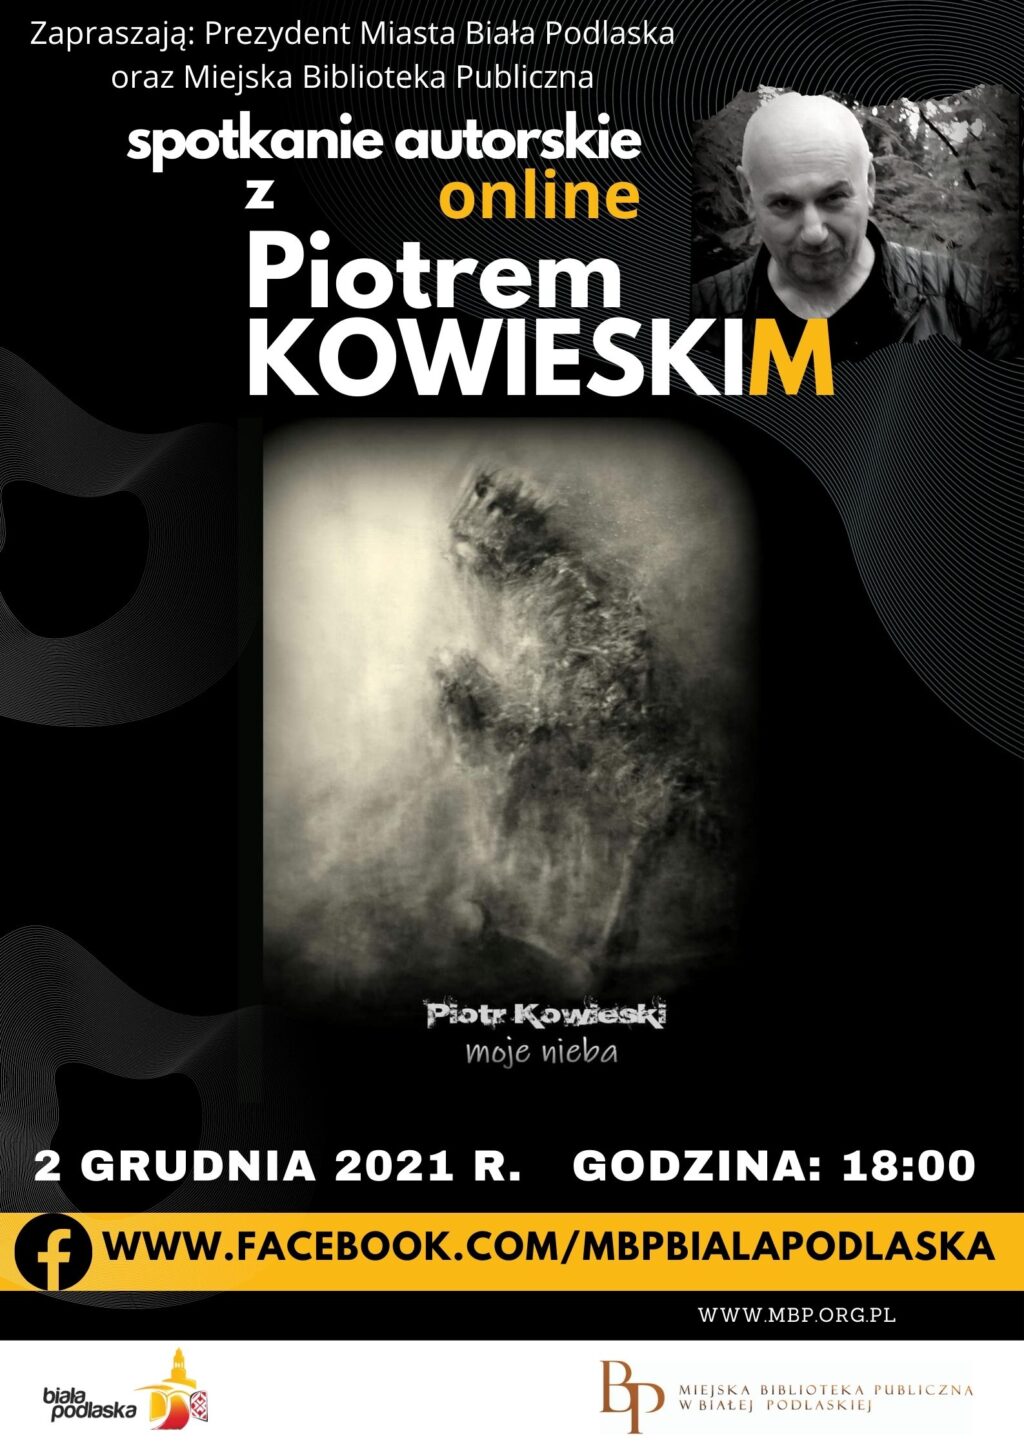 Spotkanie z Piotrem Kowieskim online